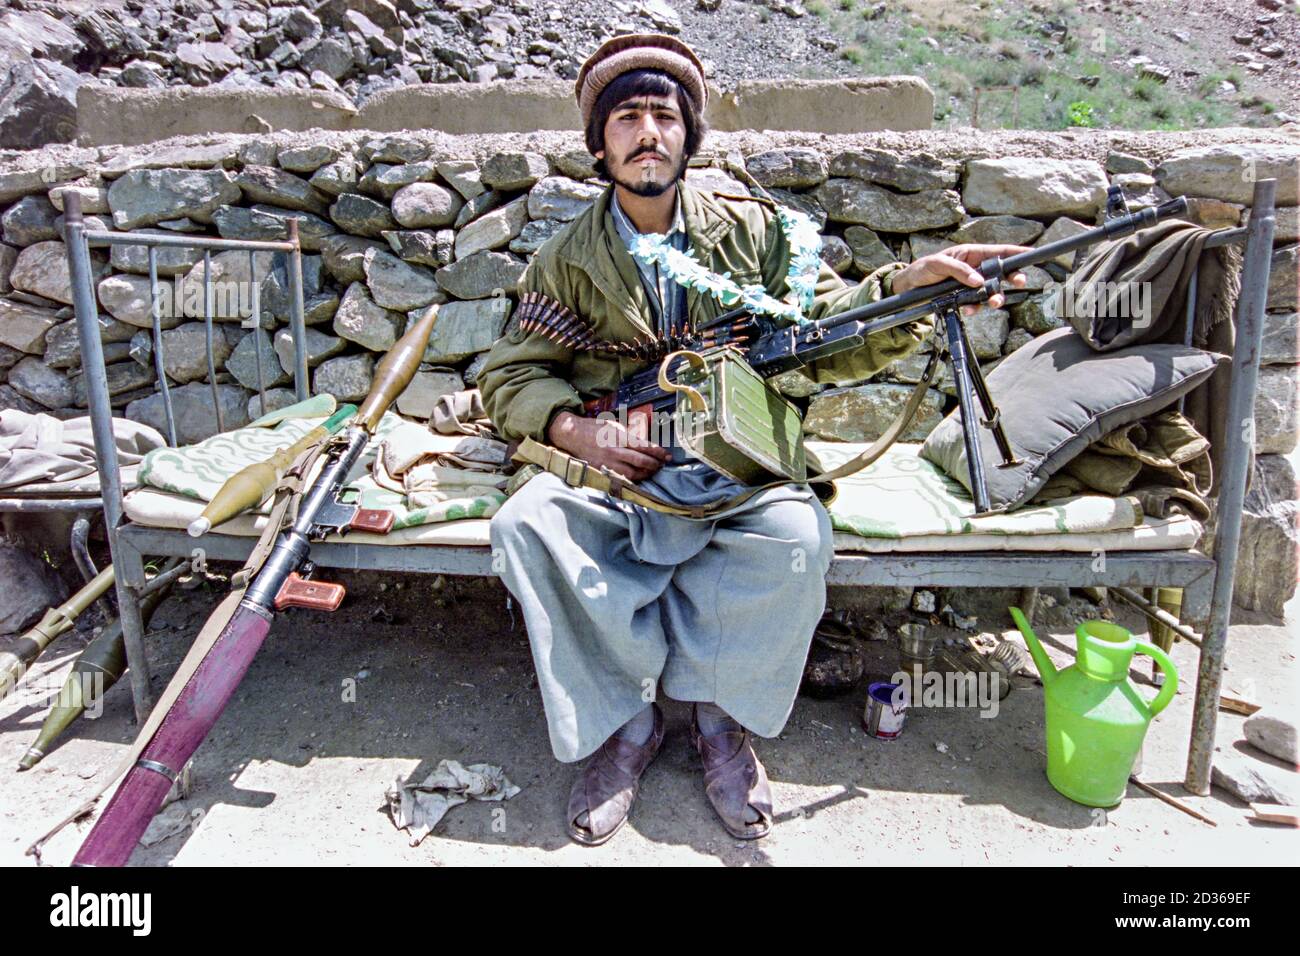 1:18 Ultimate Soldier Afghan Tribe Leader Taliban Mujahideen Figure Fighter RPG